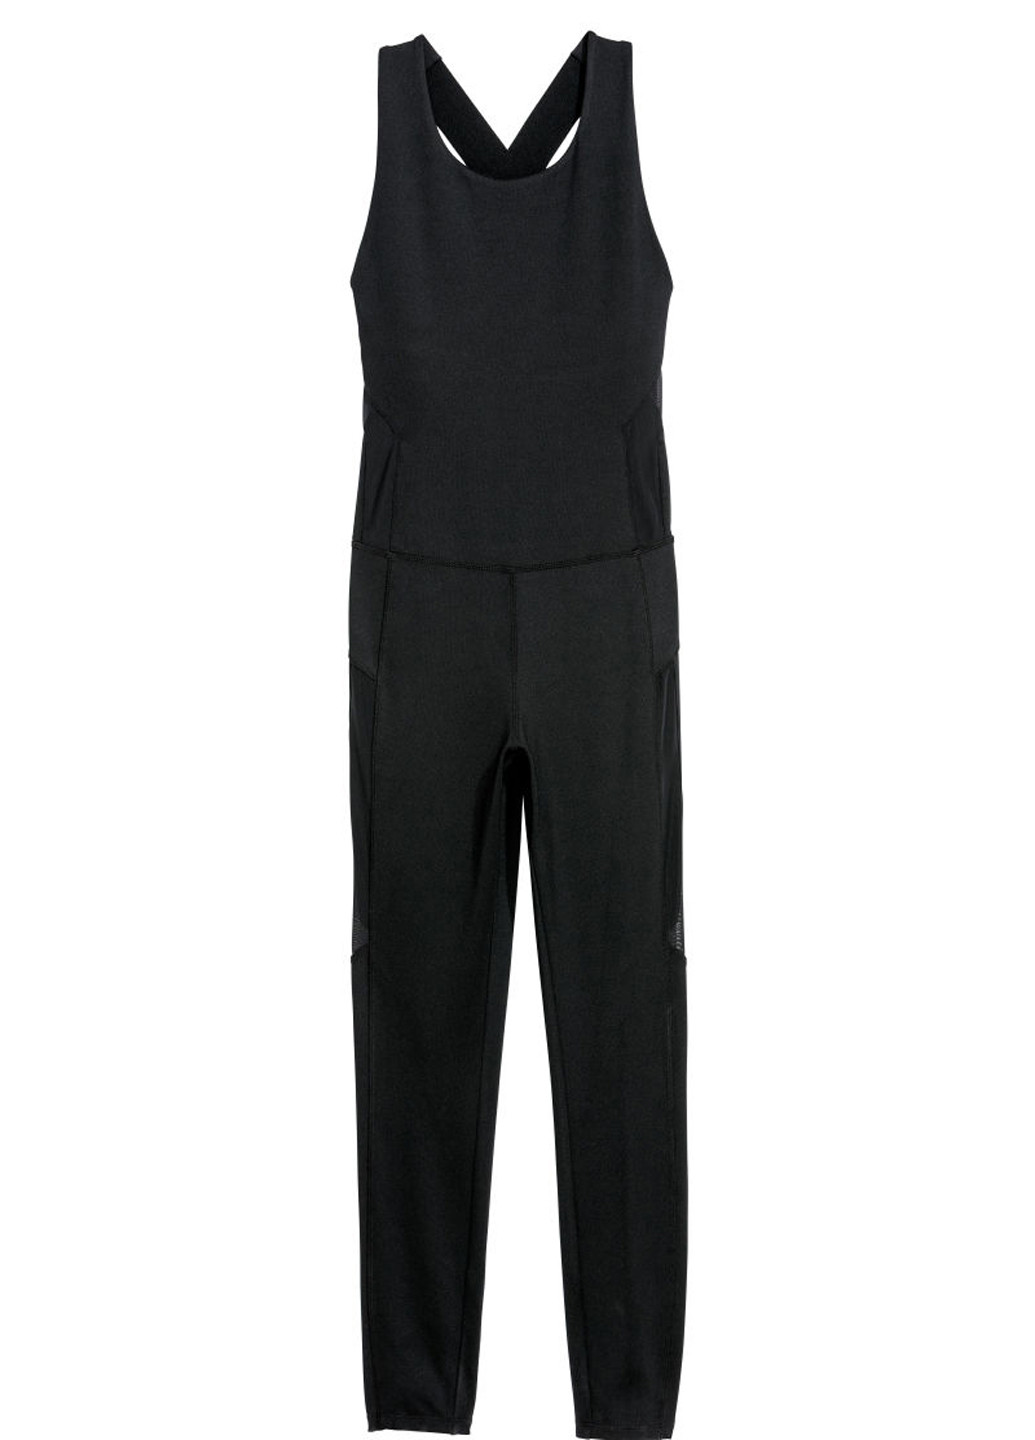 Комбинезон H&M комбинезон-брюки однотонный чёрный спортивный